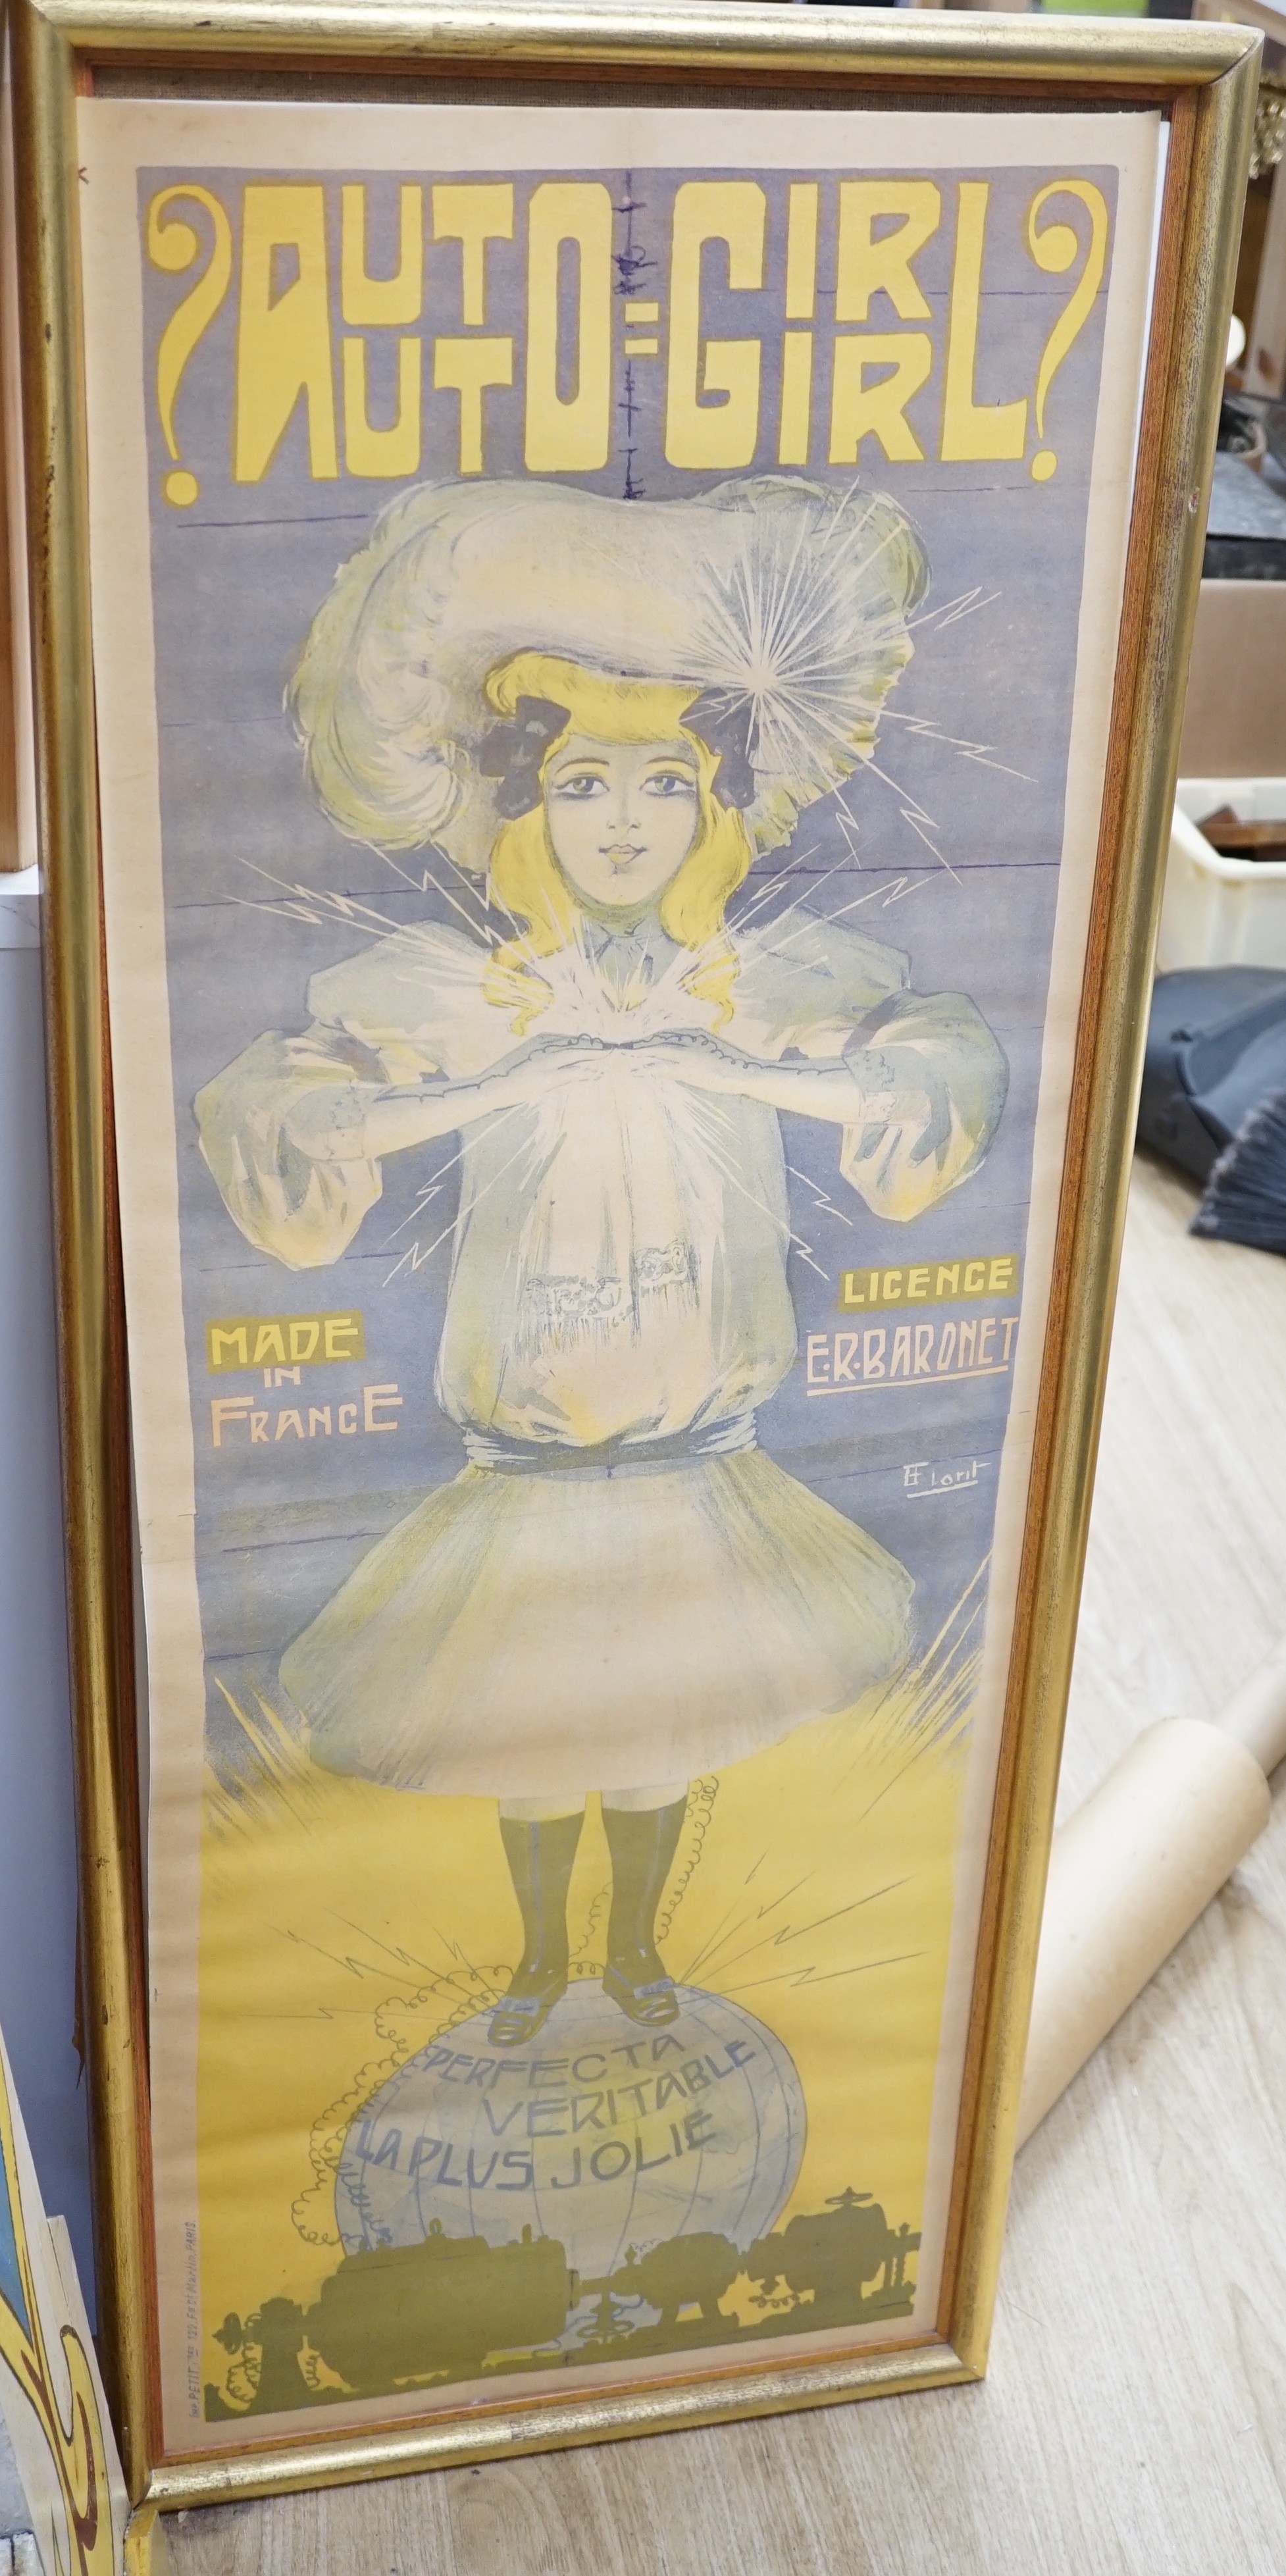 An Henri Florit poster for '?Auto-Girl?, Perfecta, Veritable, La Plus Jolie', Imprimerie Petit,